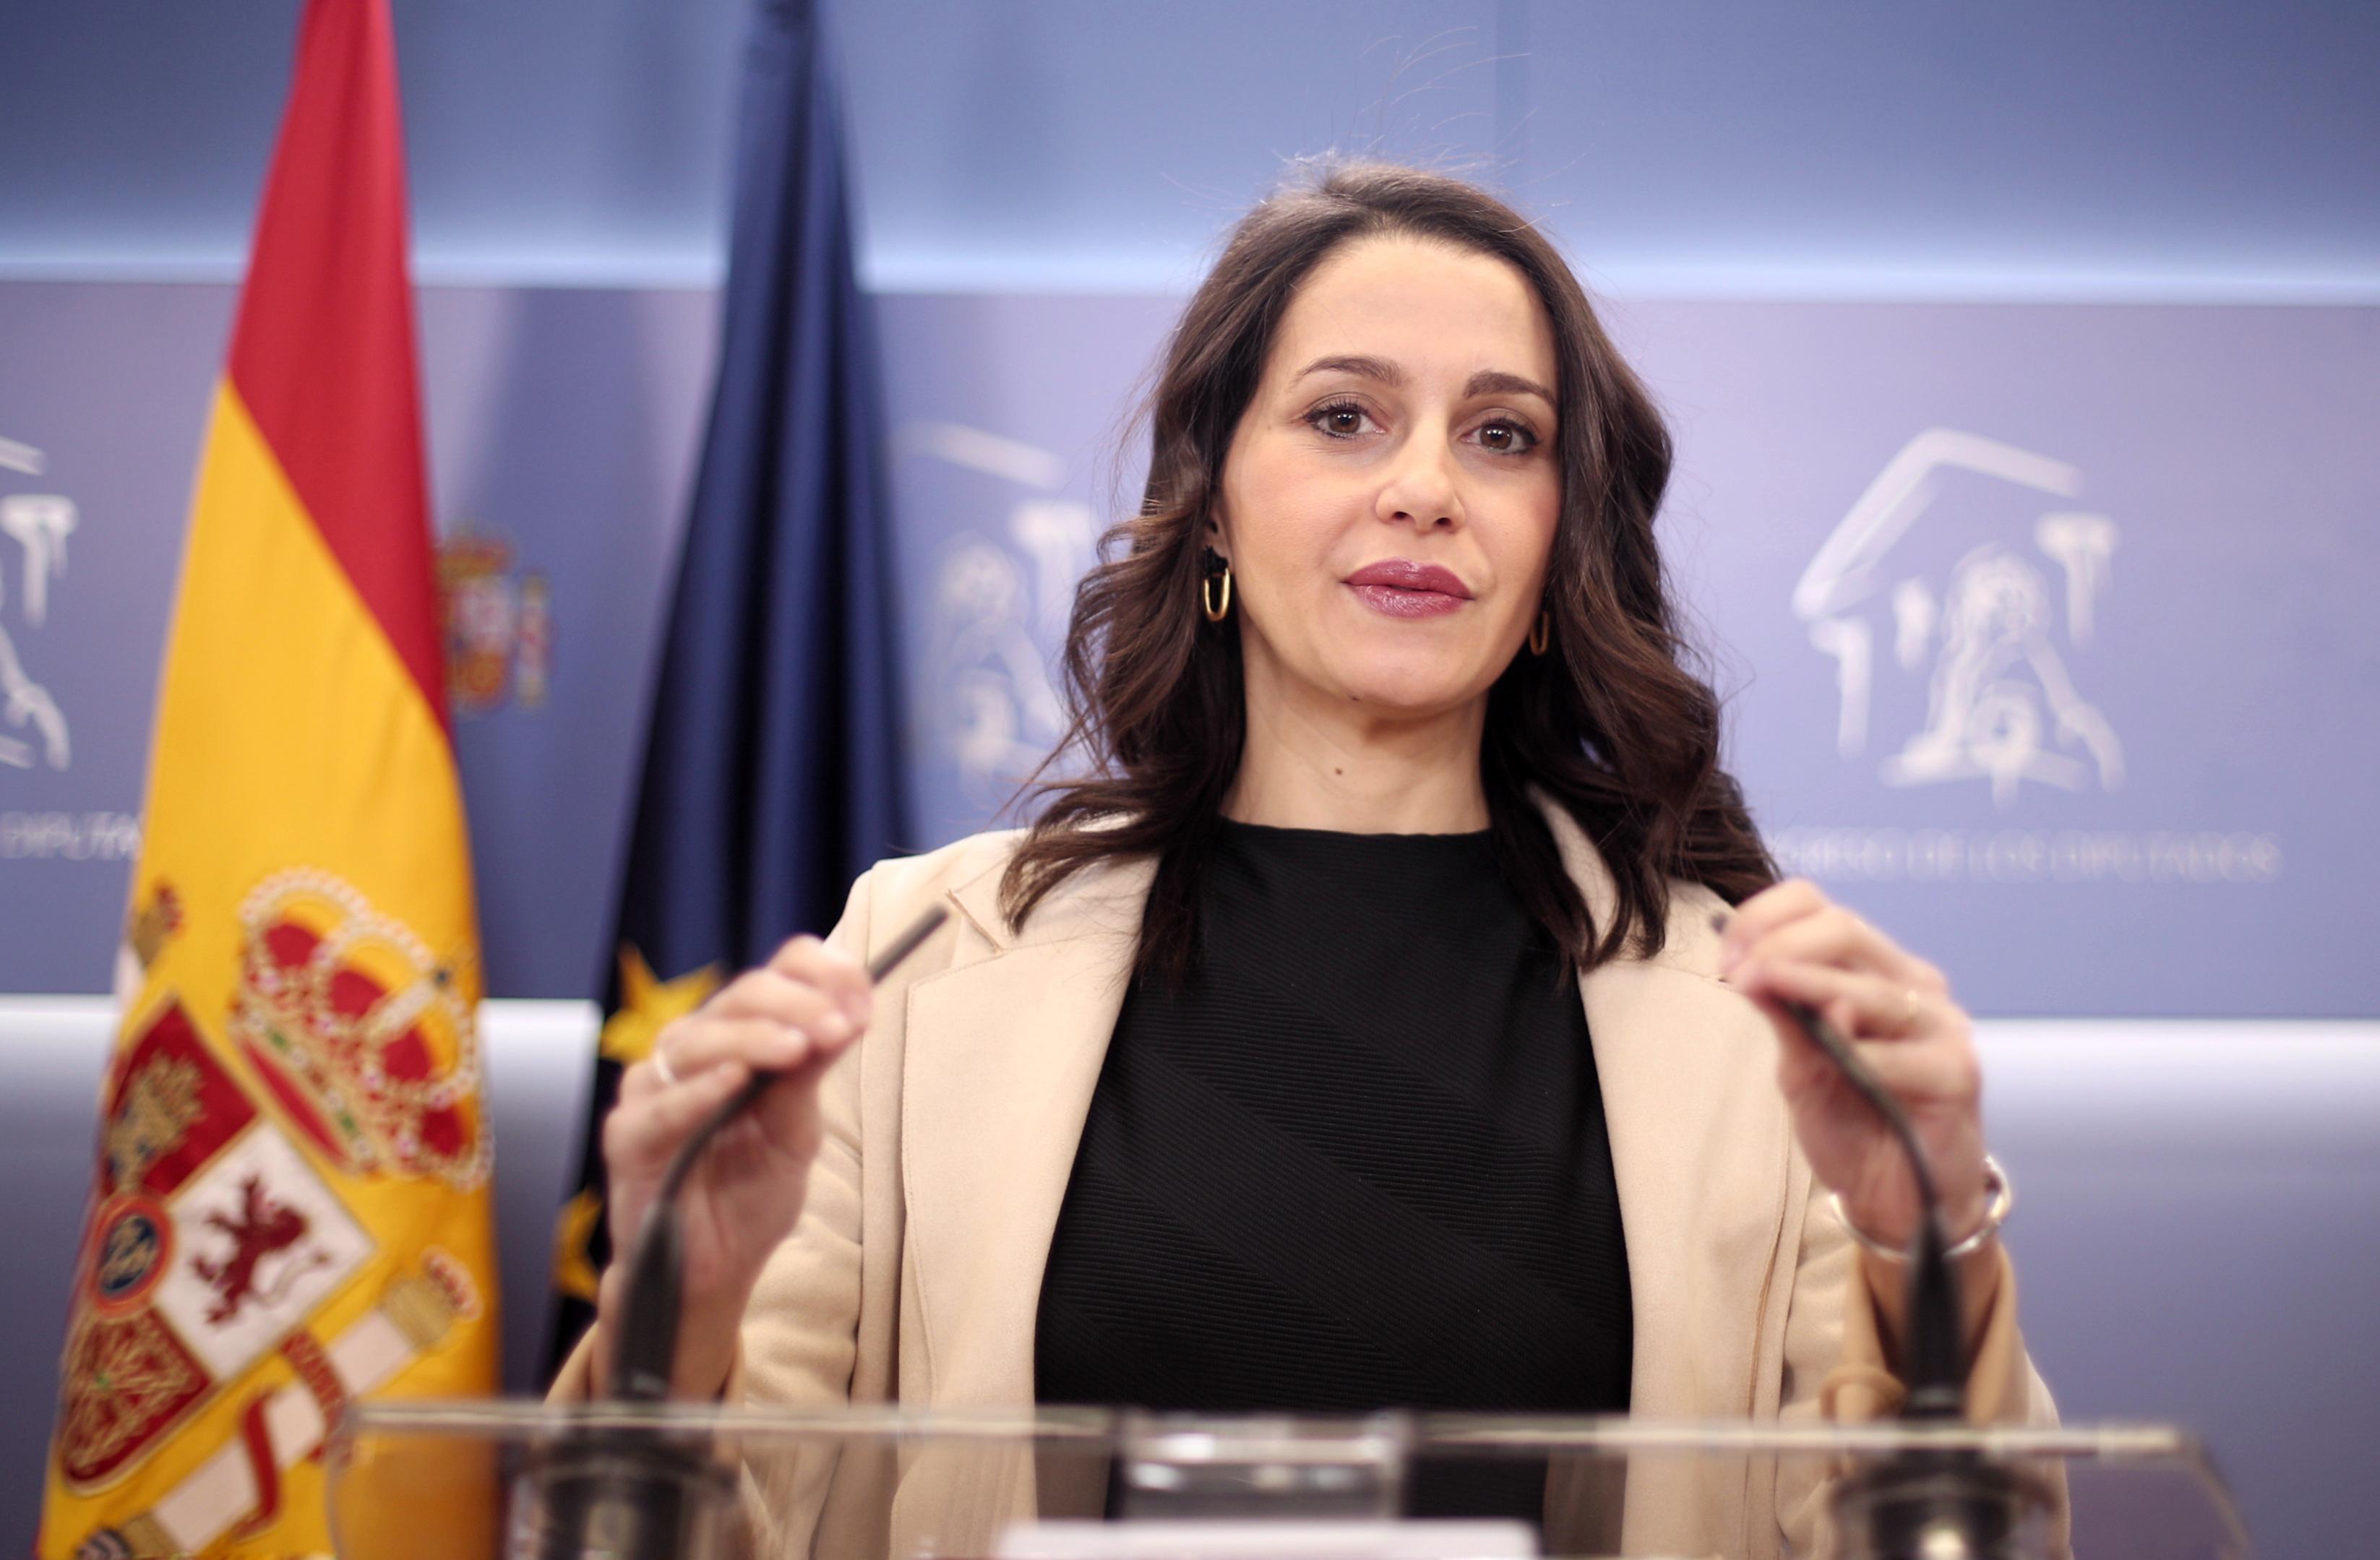 La líder de Ciudadanos Inés Arrimadas en rueda de prensa tras reunirse con Pedro Sánchez en Madrid. Europa Press.